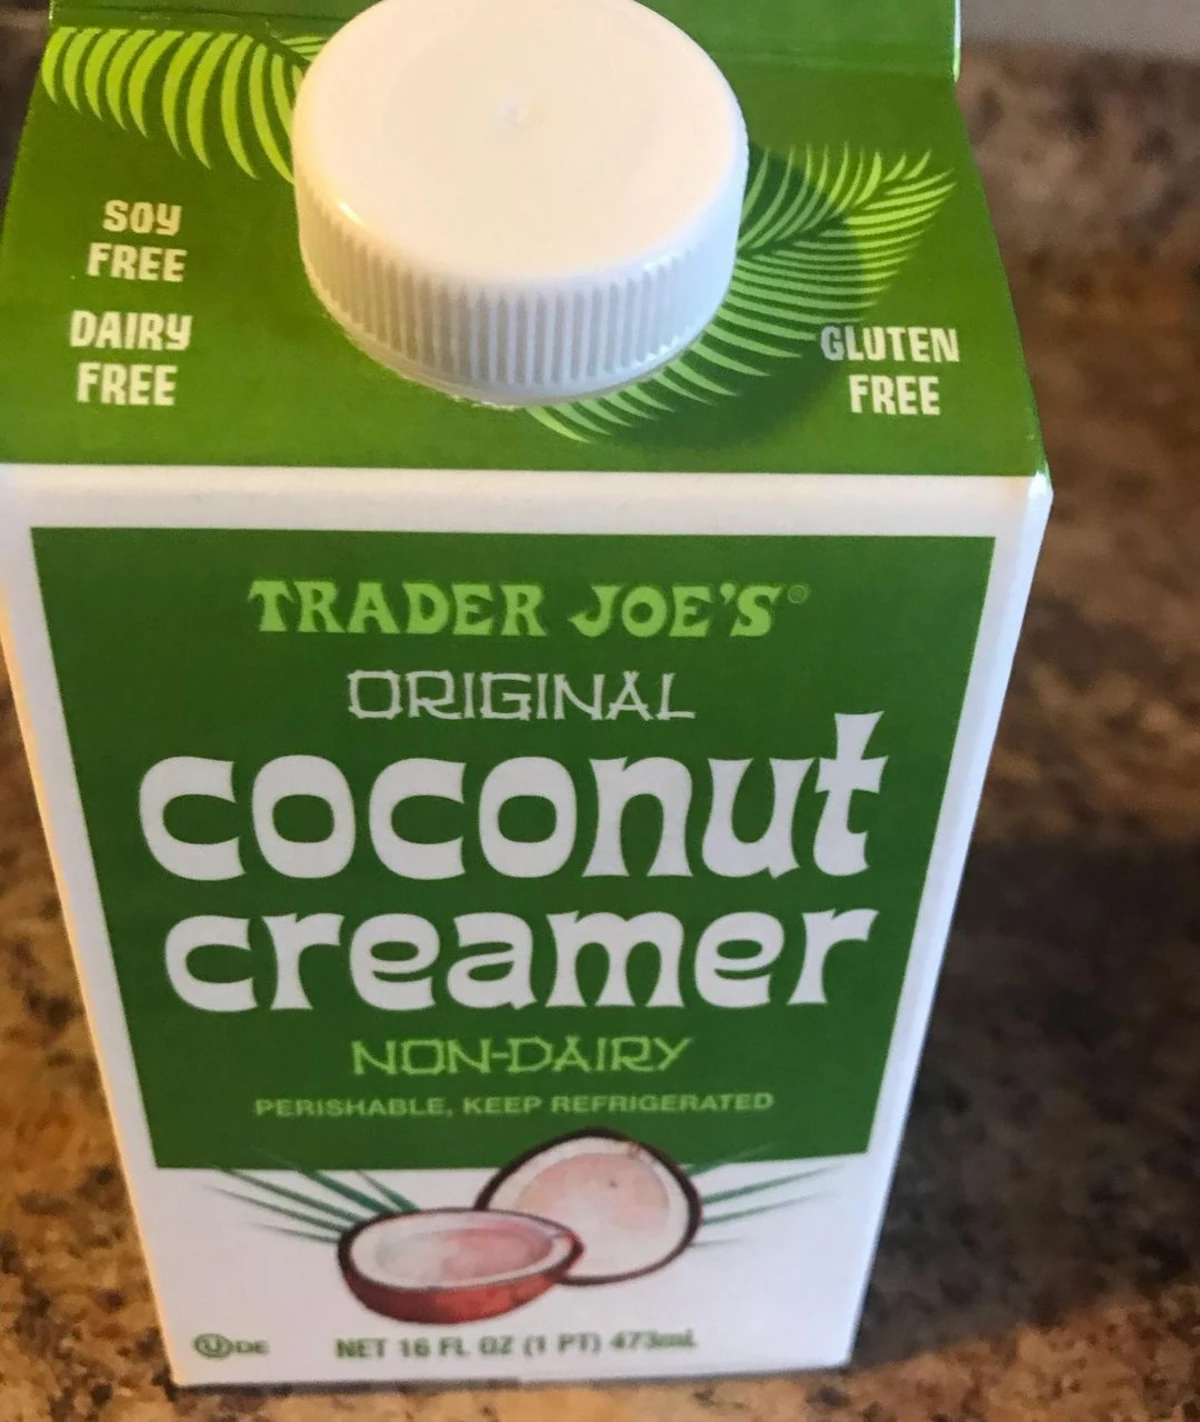 Trader Joe's Soy Creamer Reviews